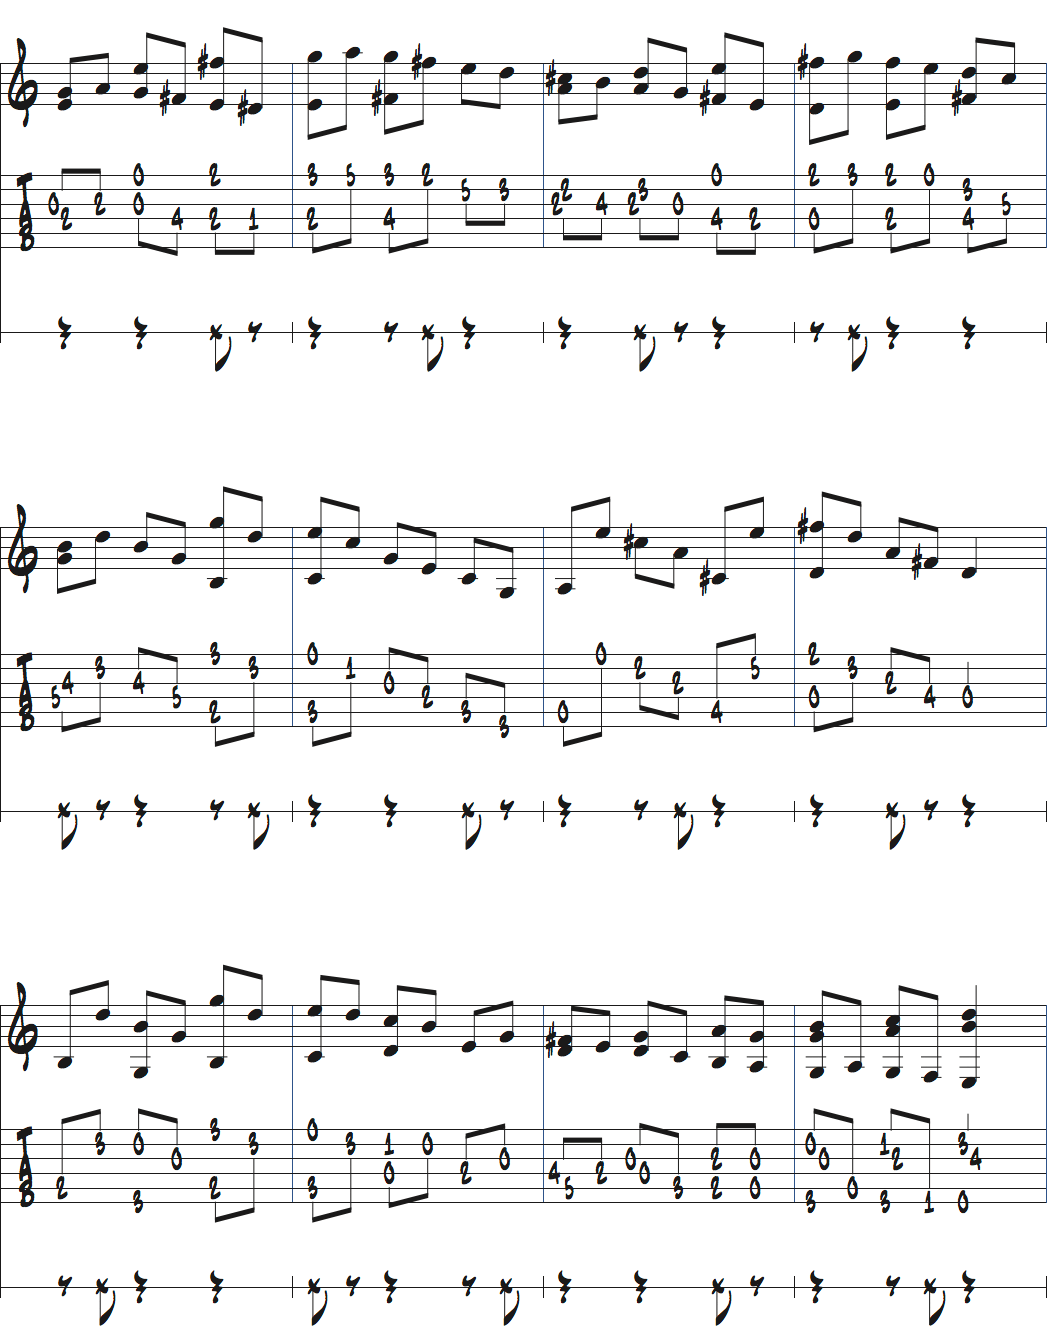 メトロノームを2拍半ごとに鳴らして練習するストレートのノリページ2楽譜